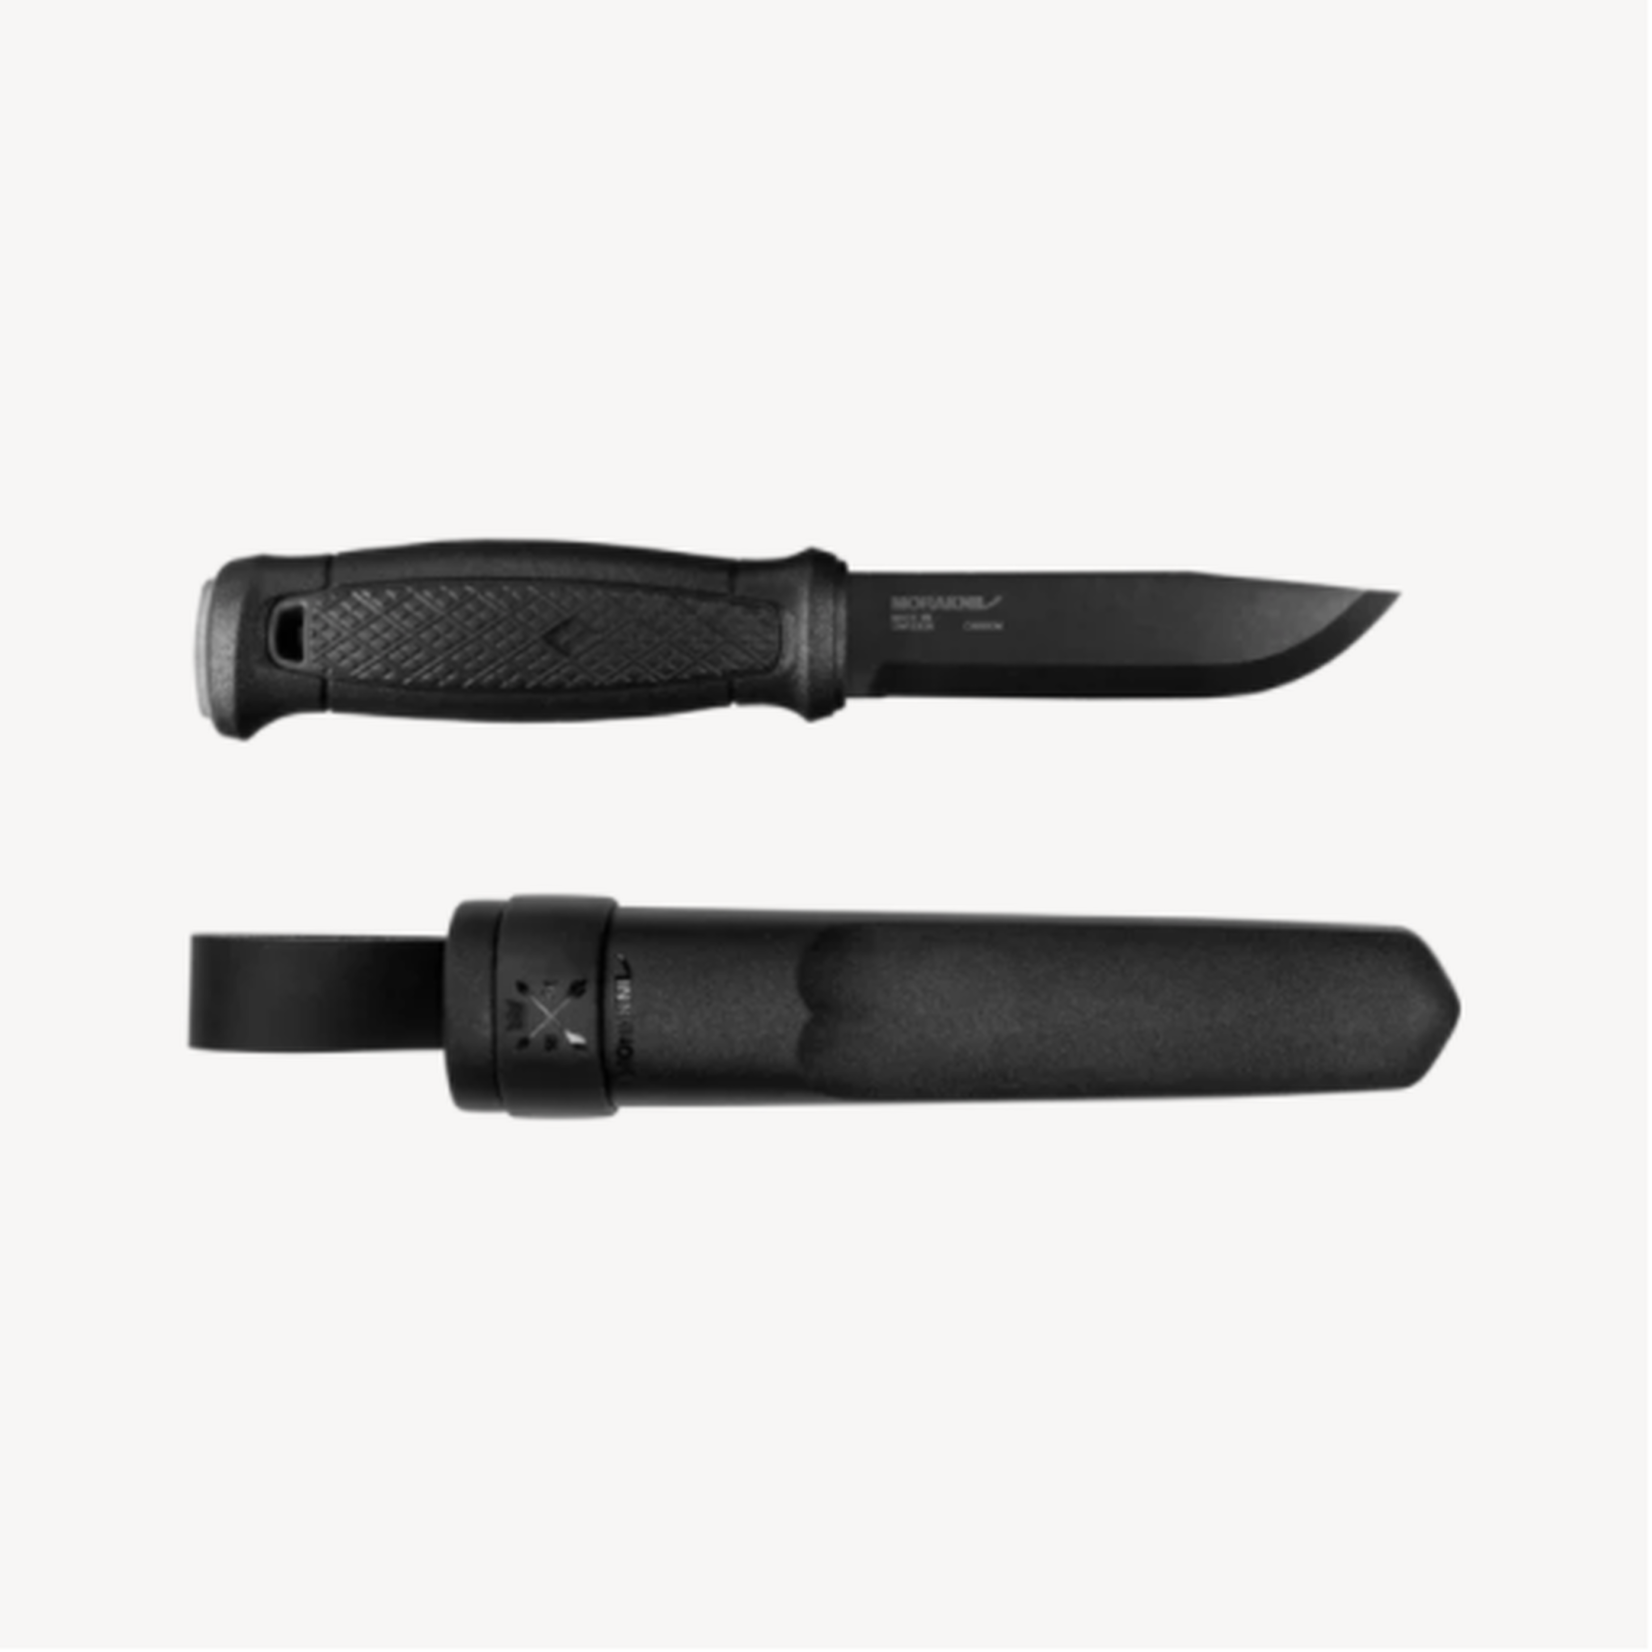 Morakniv Garberg knife - Black blade